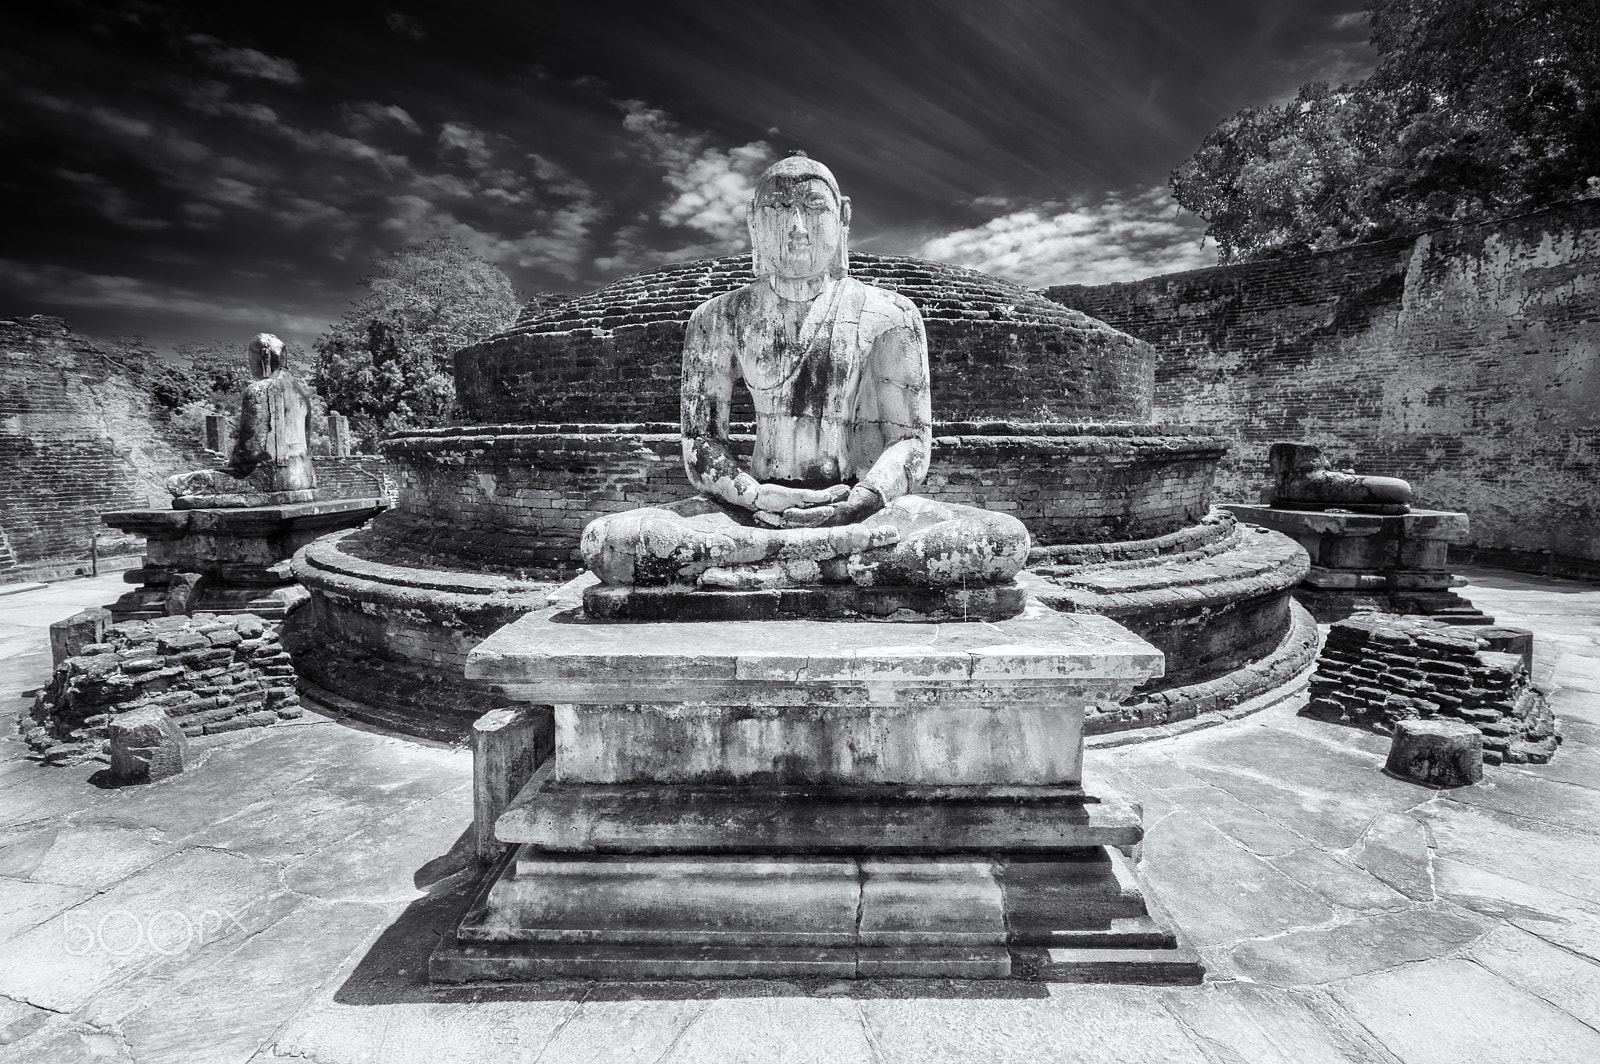 Pentax K-3 sample photo. Polonnaruwa temple photography